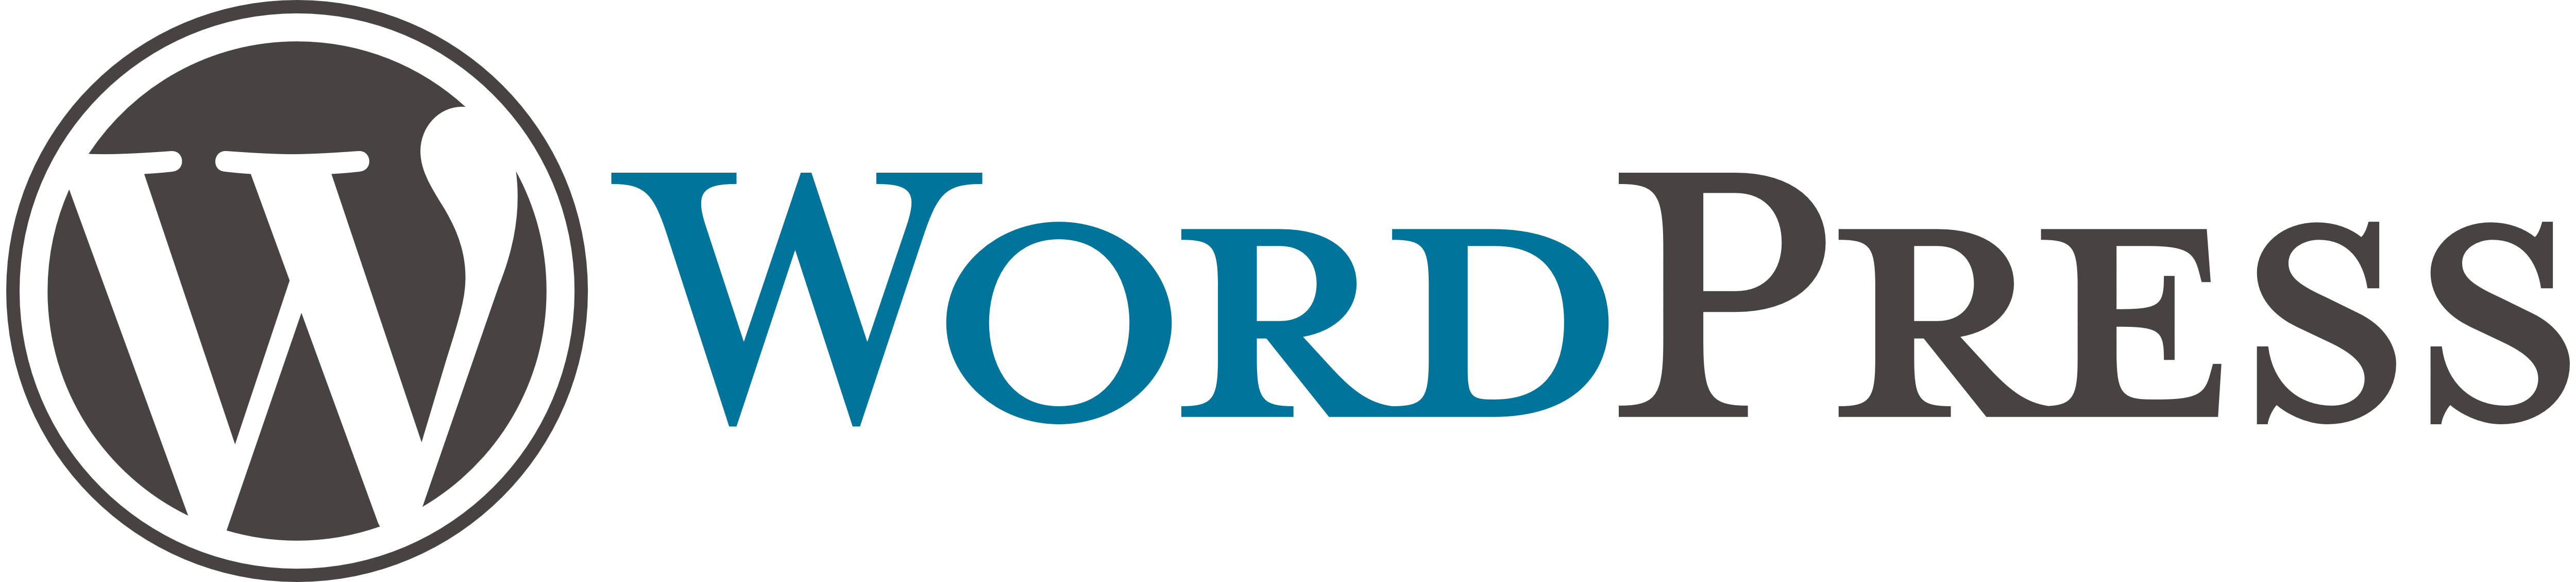 wordpress-logos-download